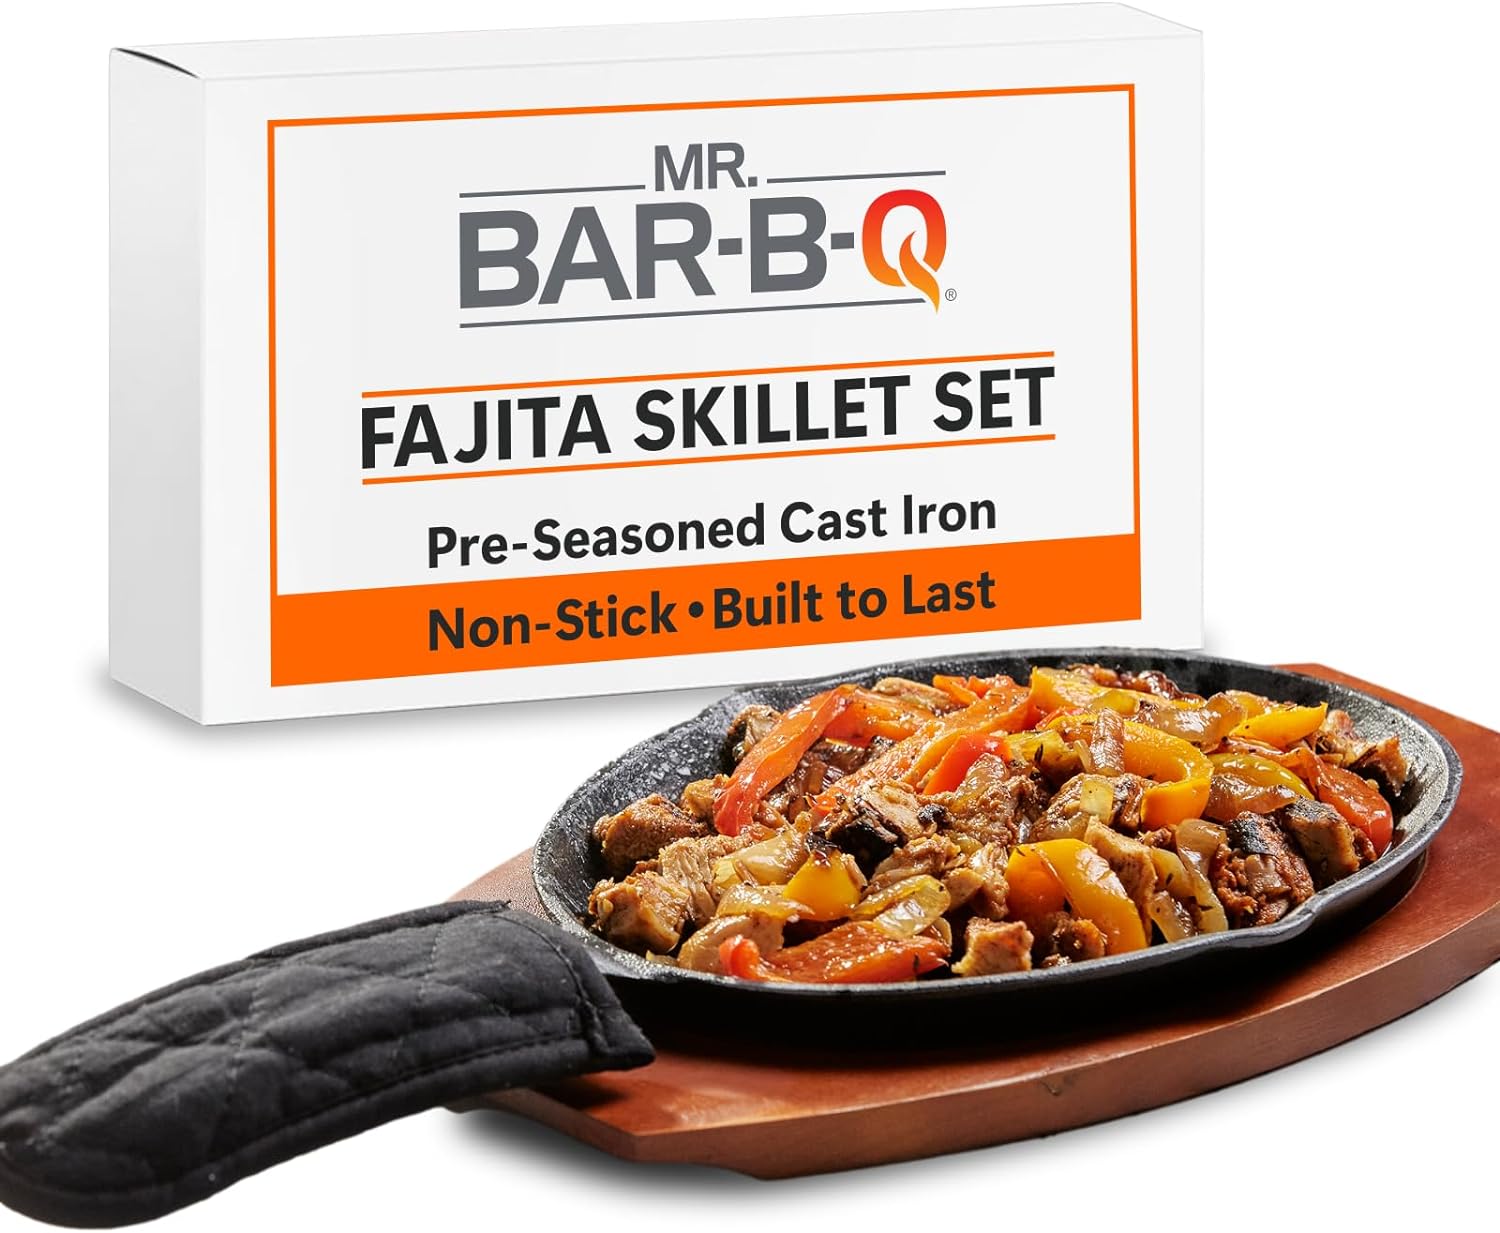 Mr. Bar-B-Q Cast Iron Fajita Skillet Set